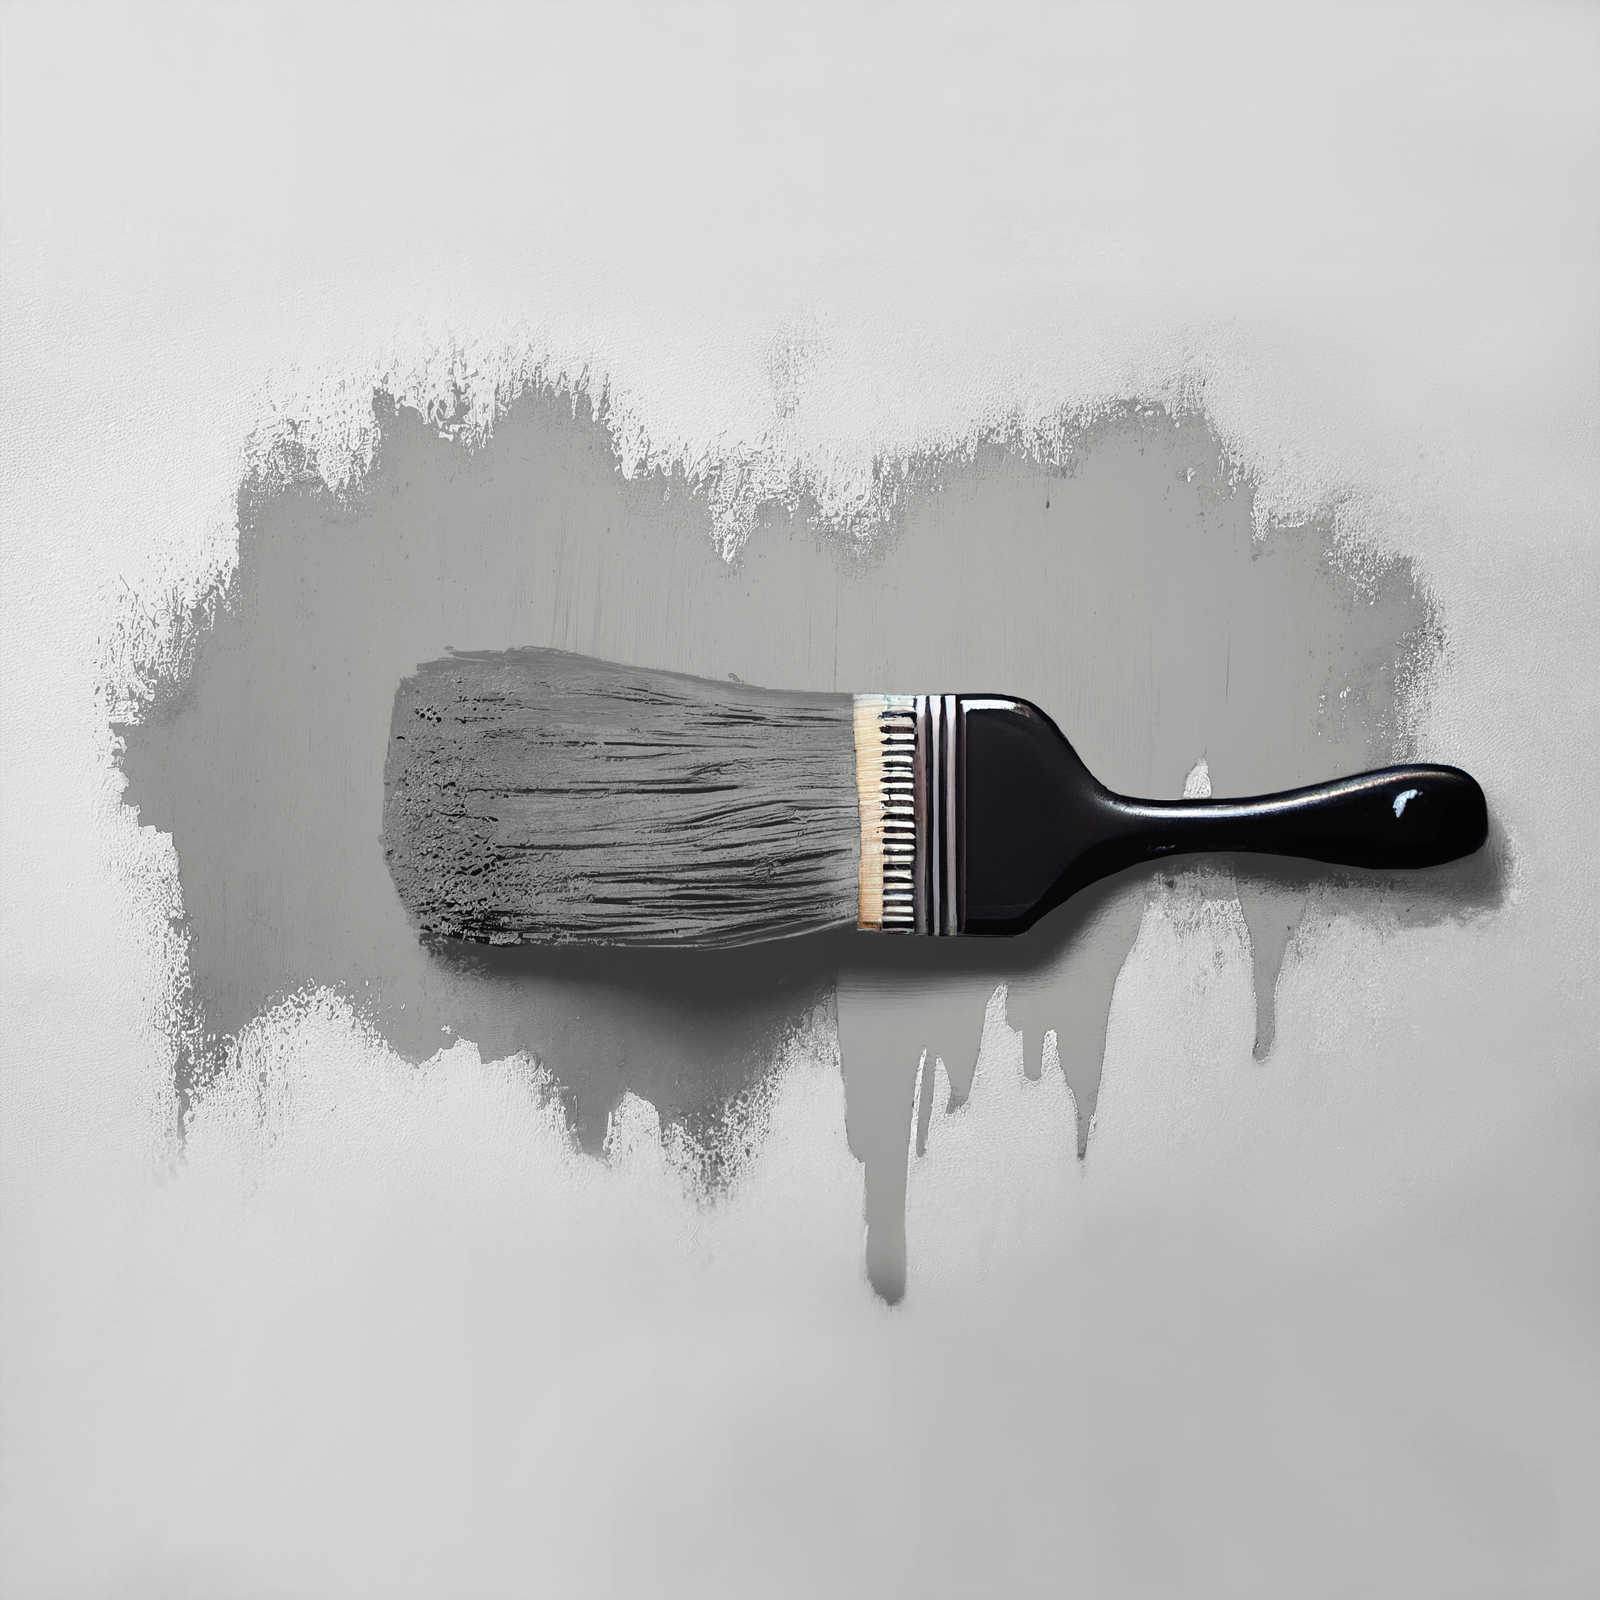             Pittura murale TCK1011 »Attractive Anchovies« in grigio argento caldo – 2,5 litri
        